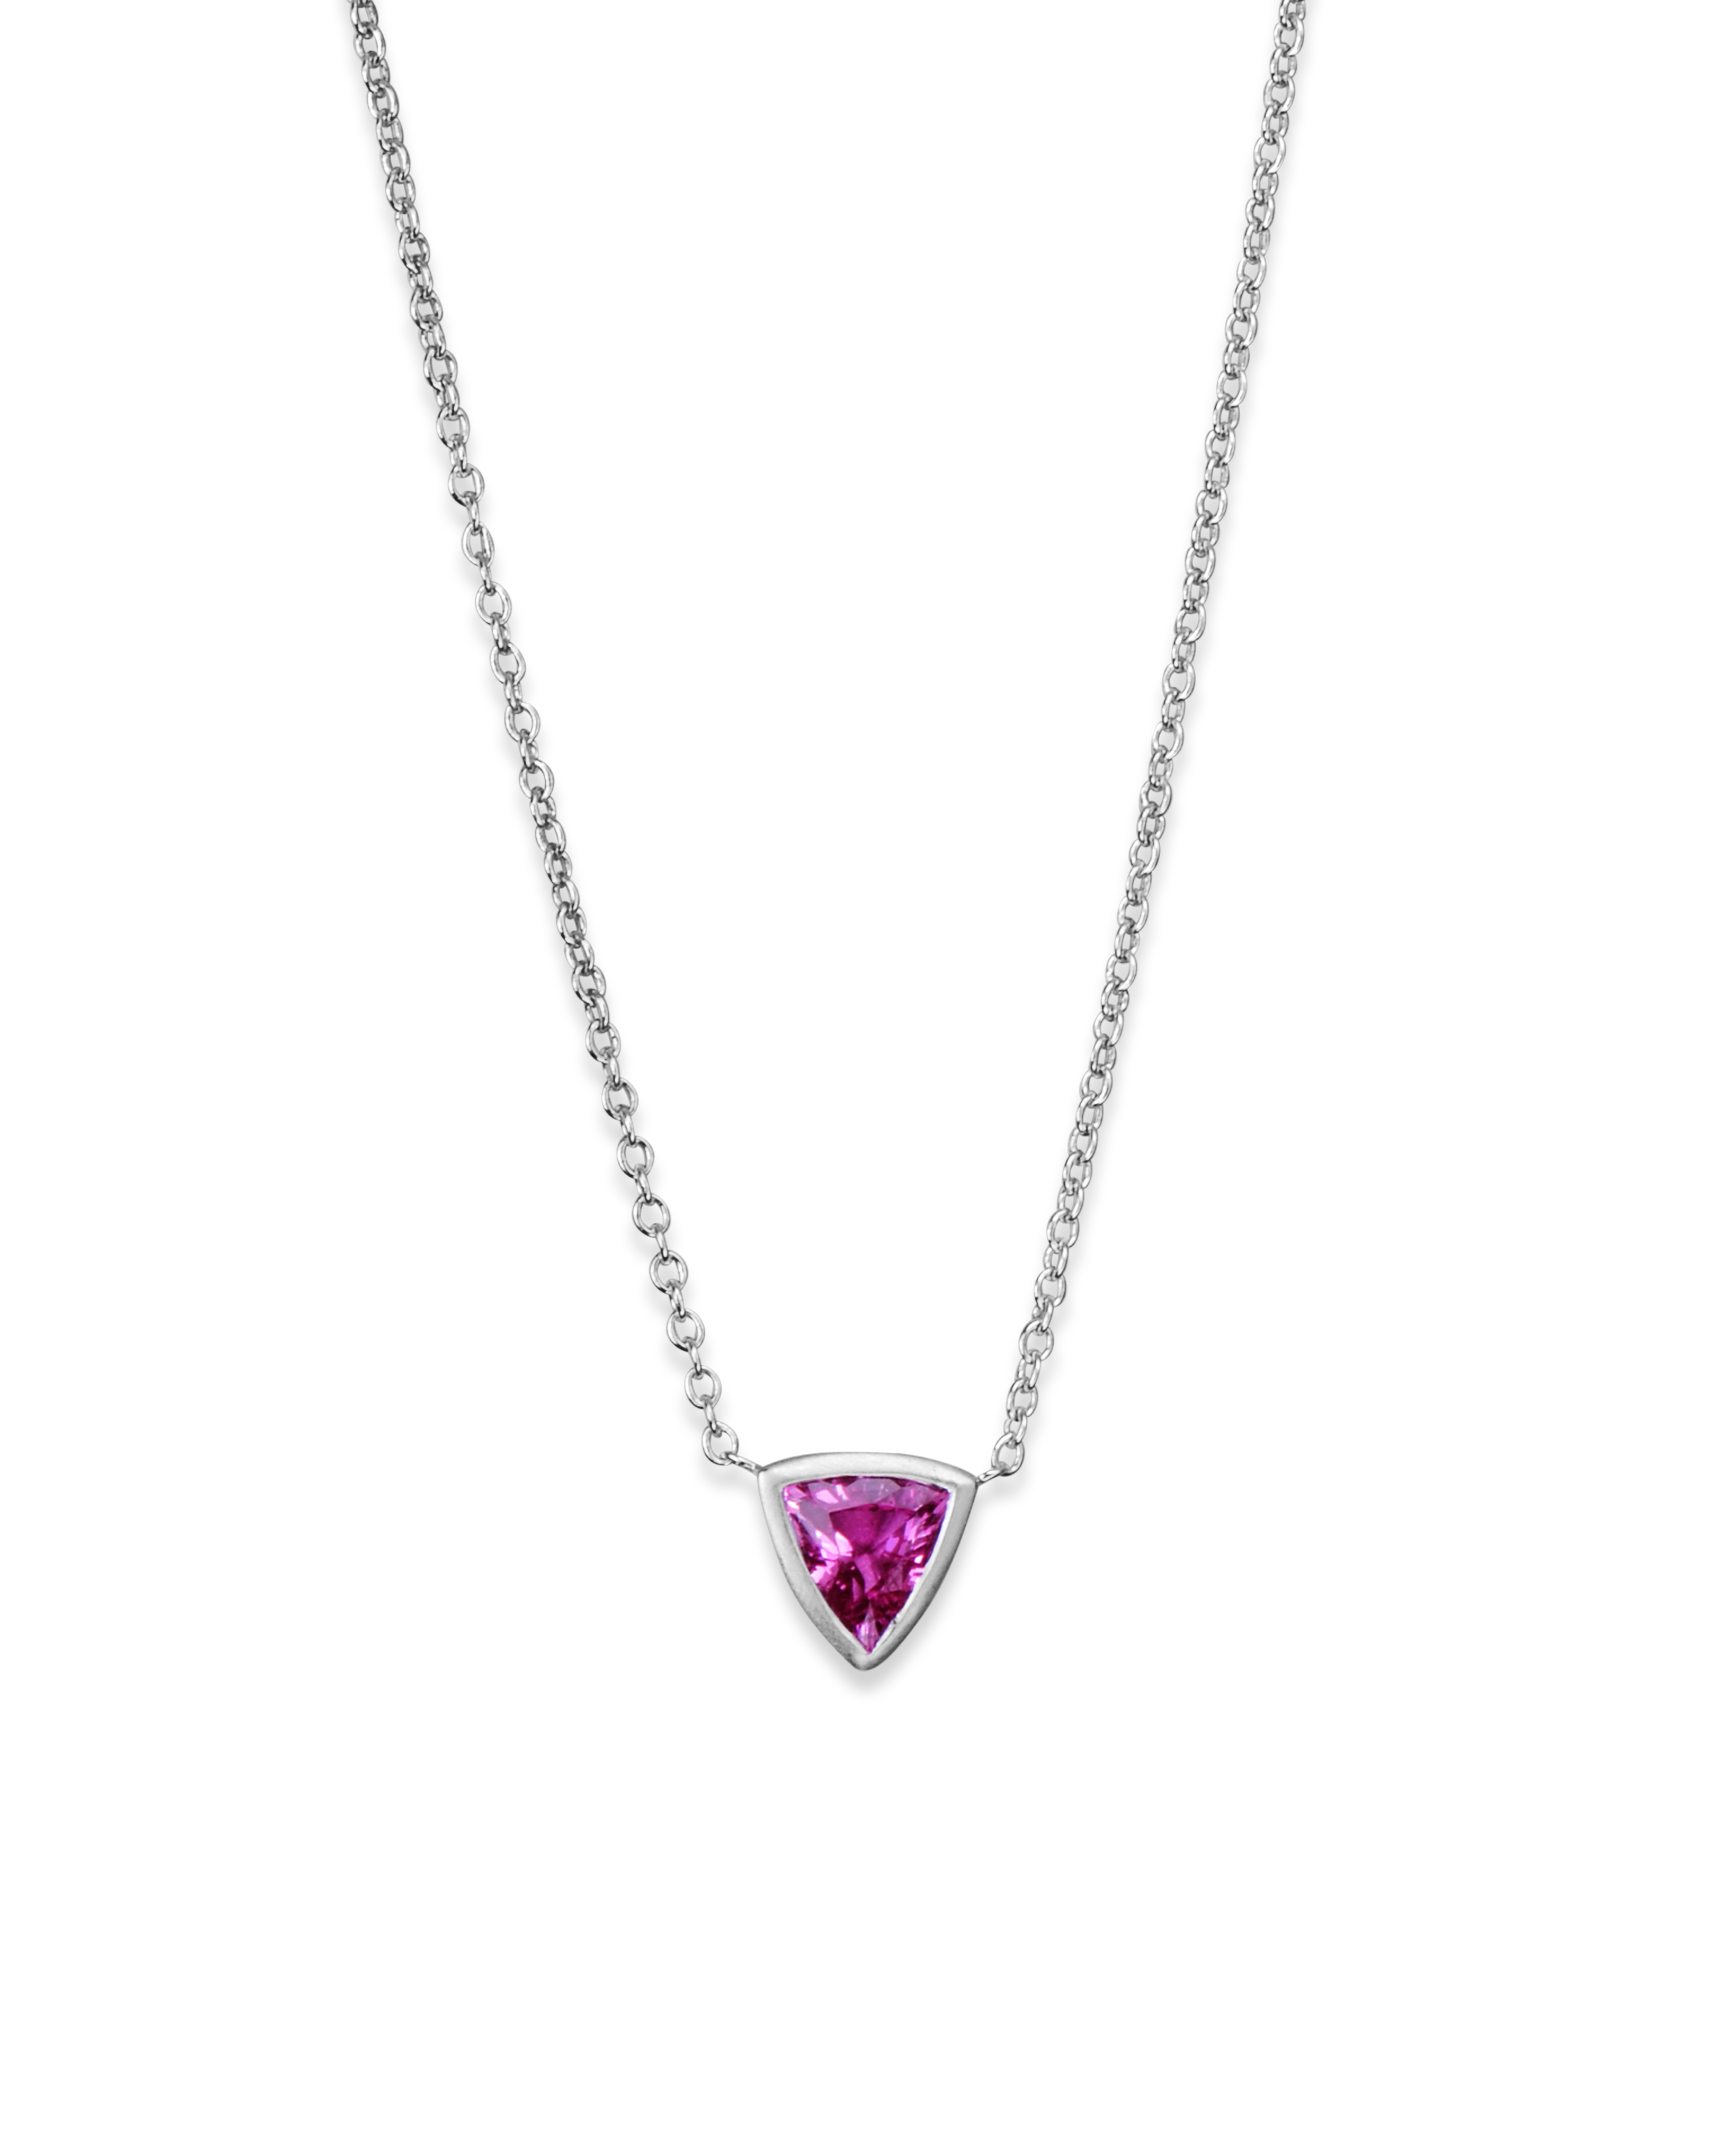 Louis Vuitton 18K Pink Sapphire Empreinte Clover Pendant Necklace